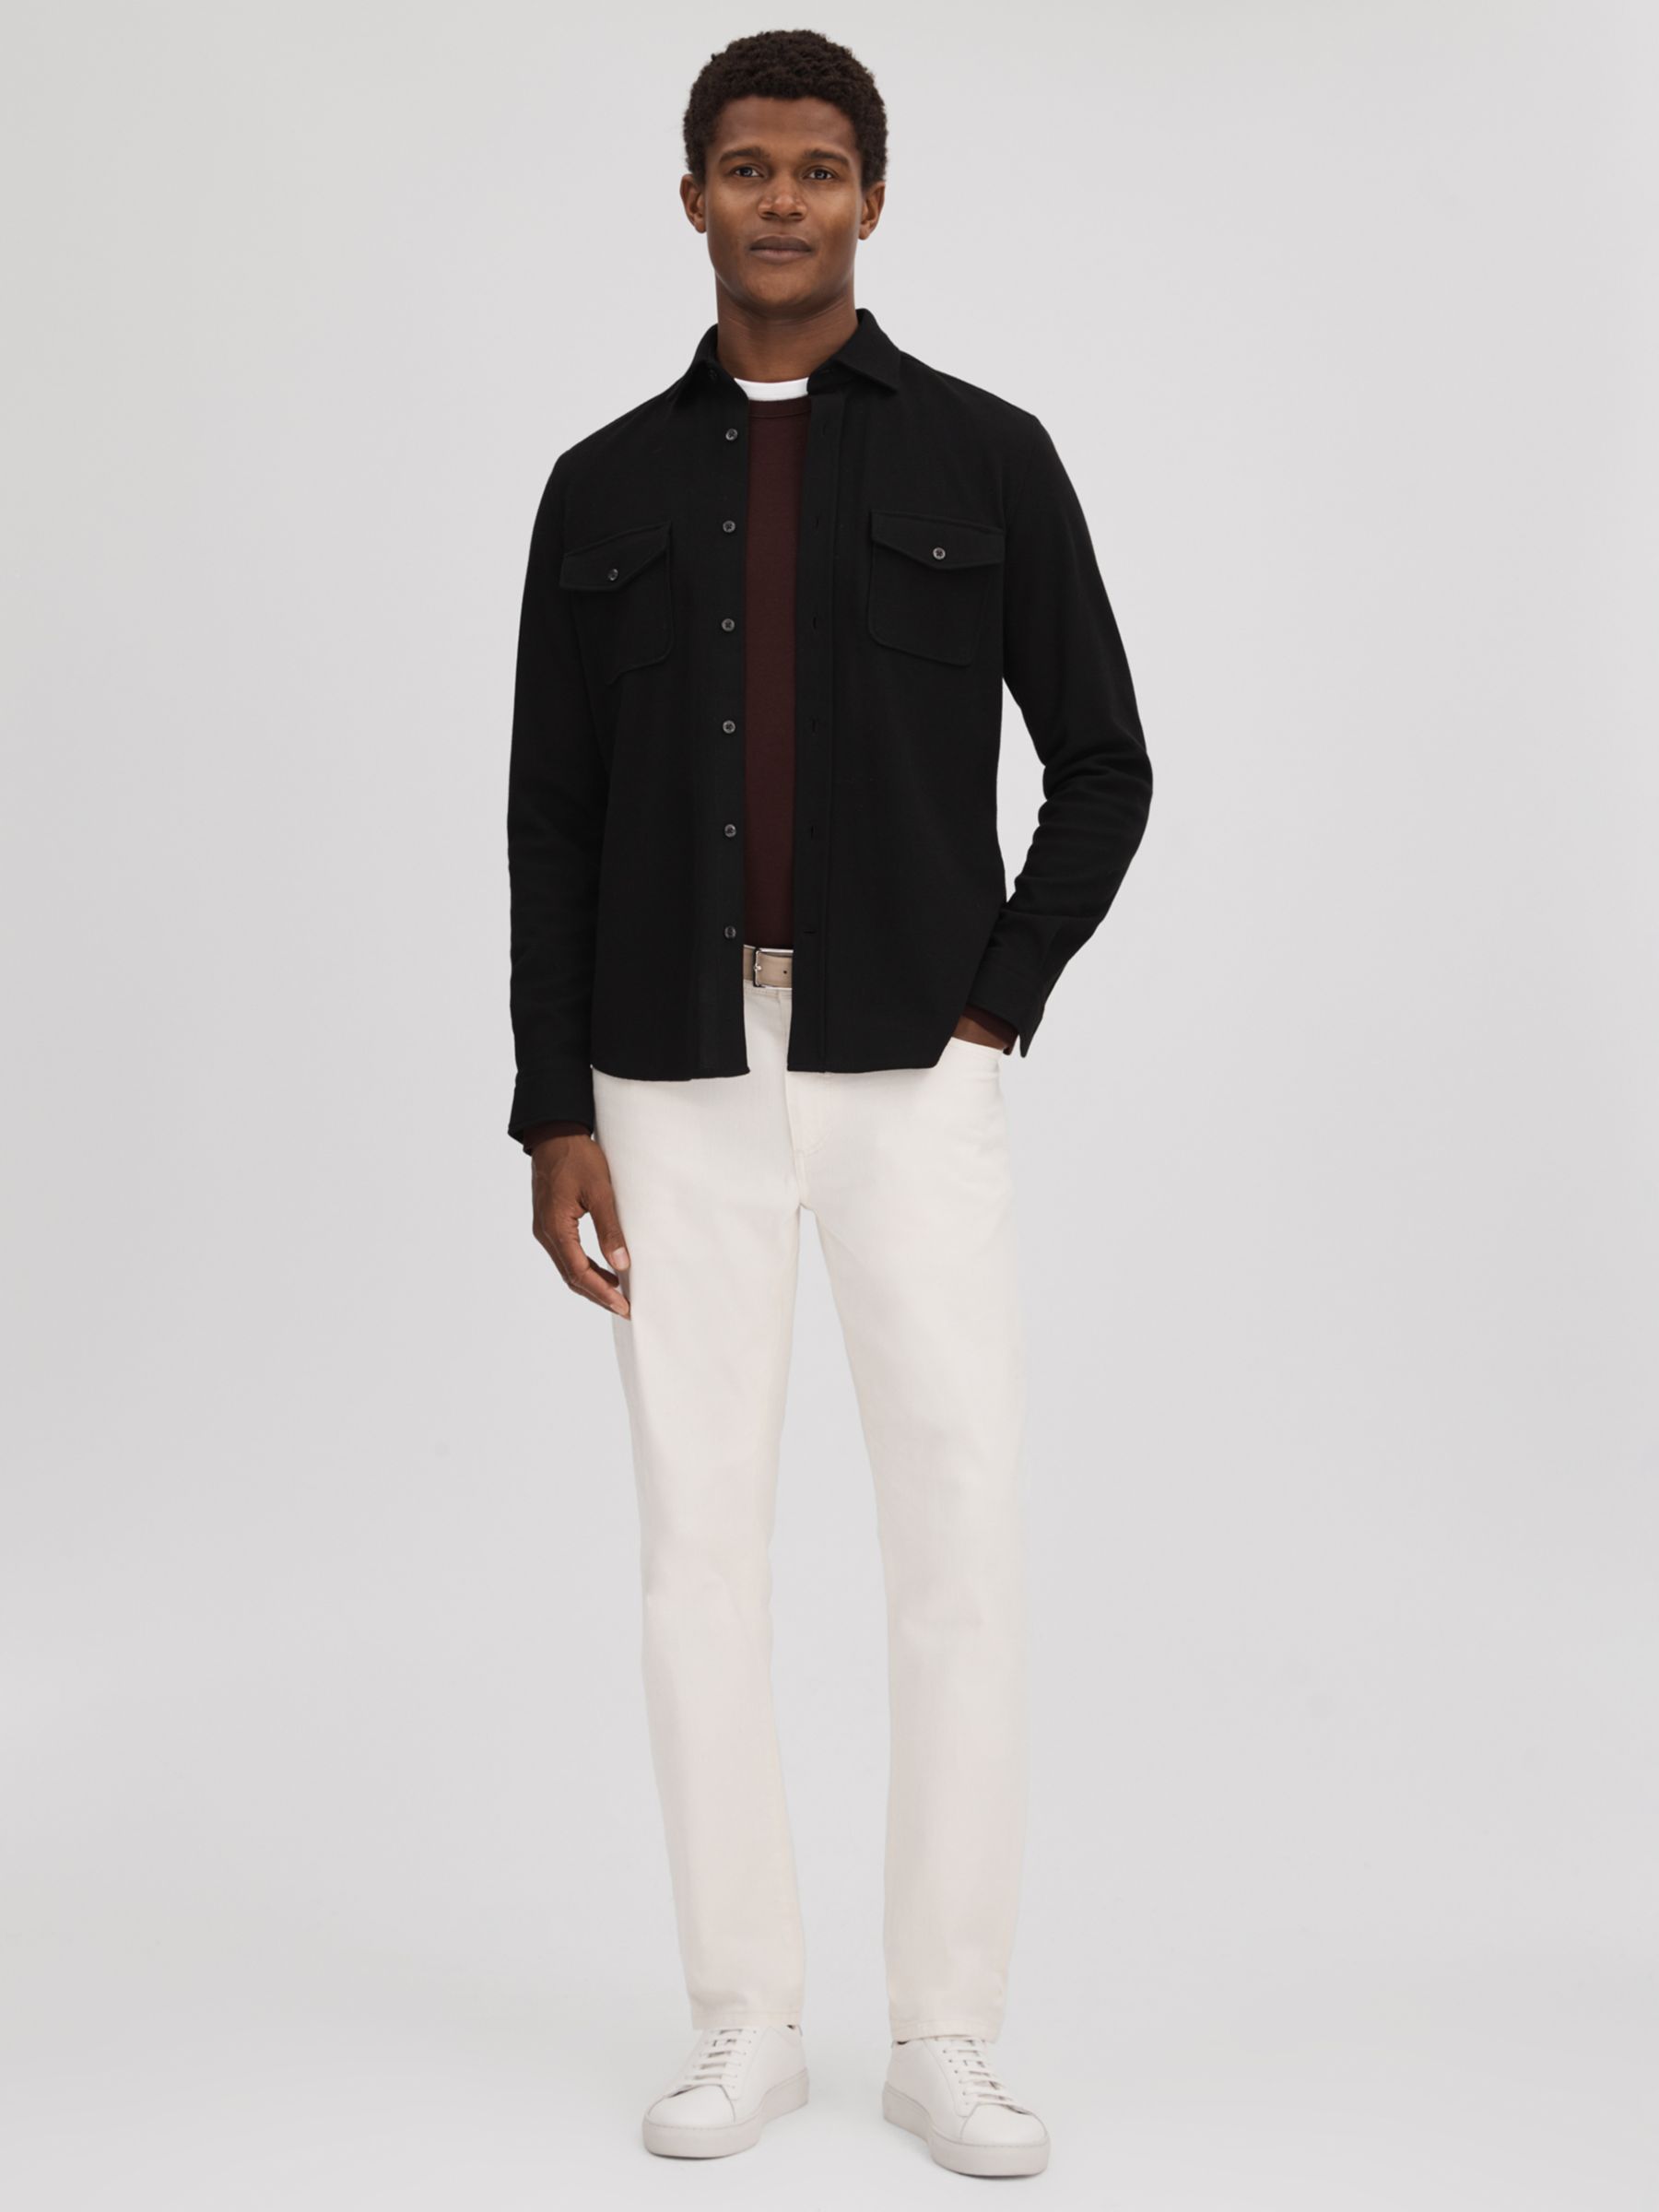 Reiss Ragan Long Sleeve Jersey Textured Shirt, Black, XS